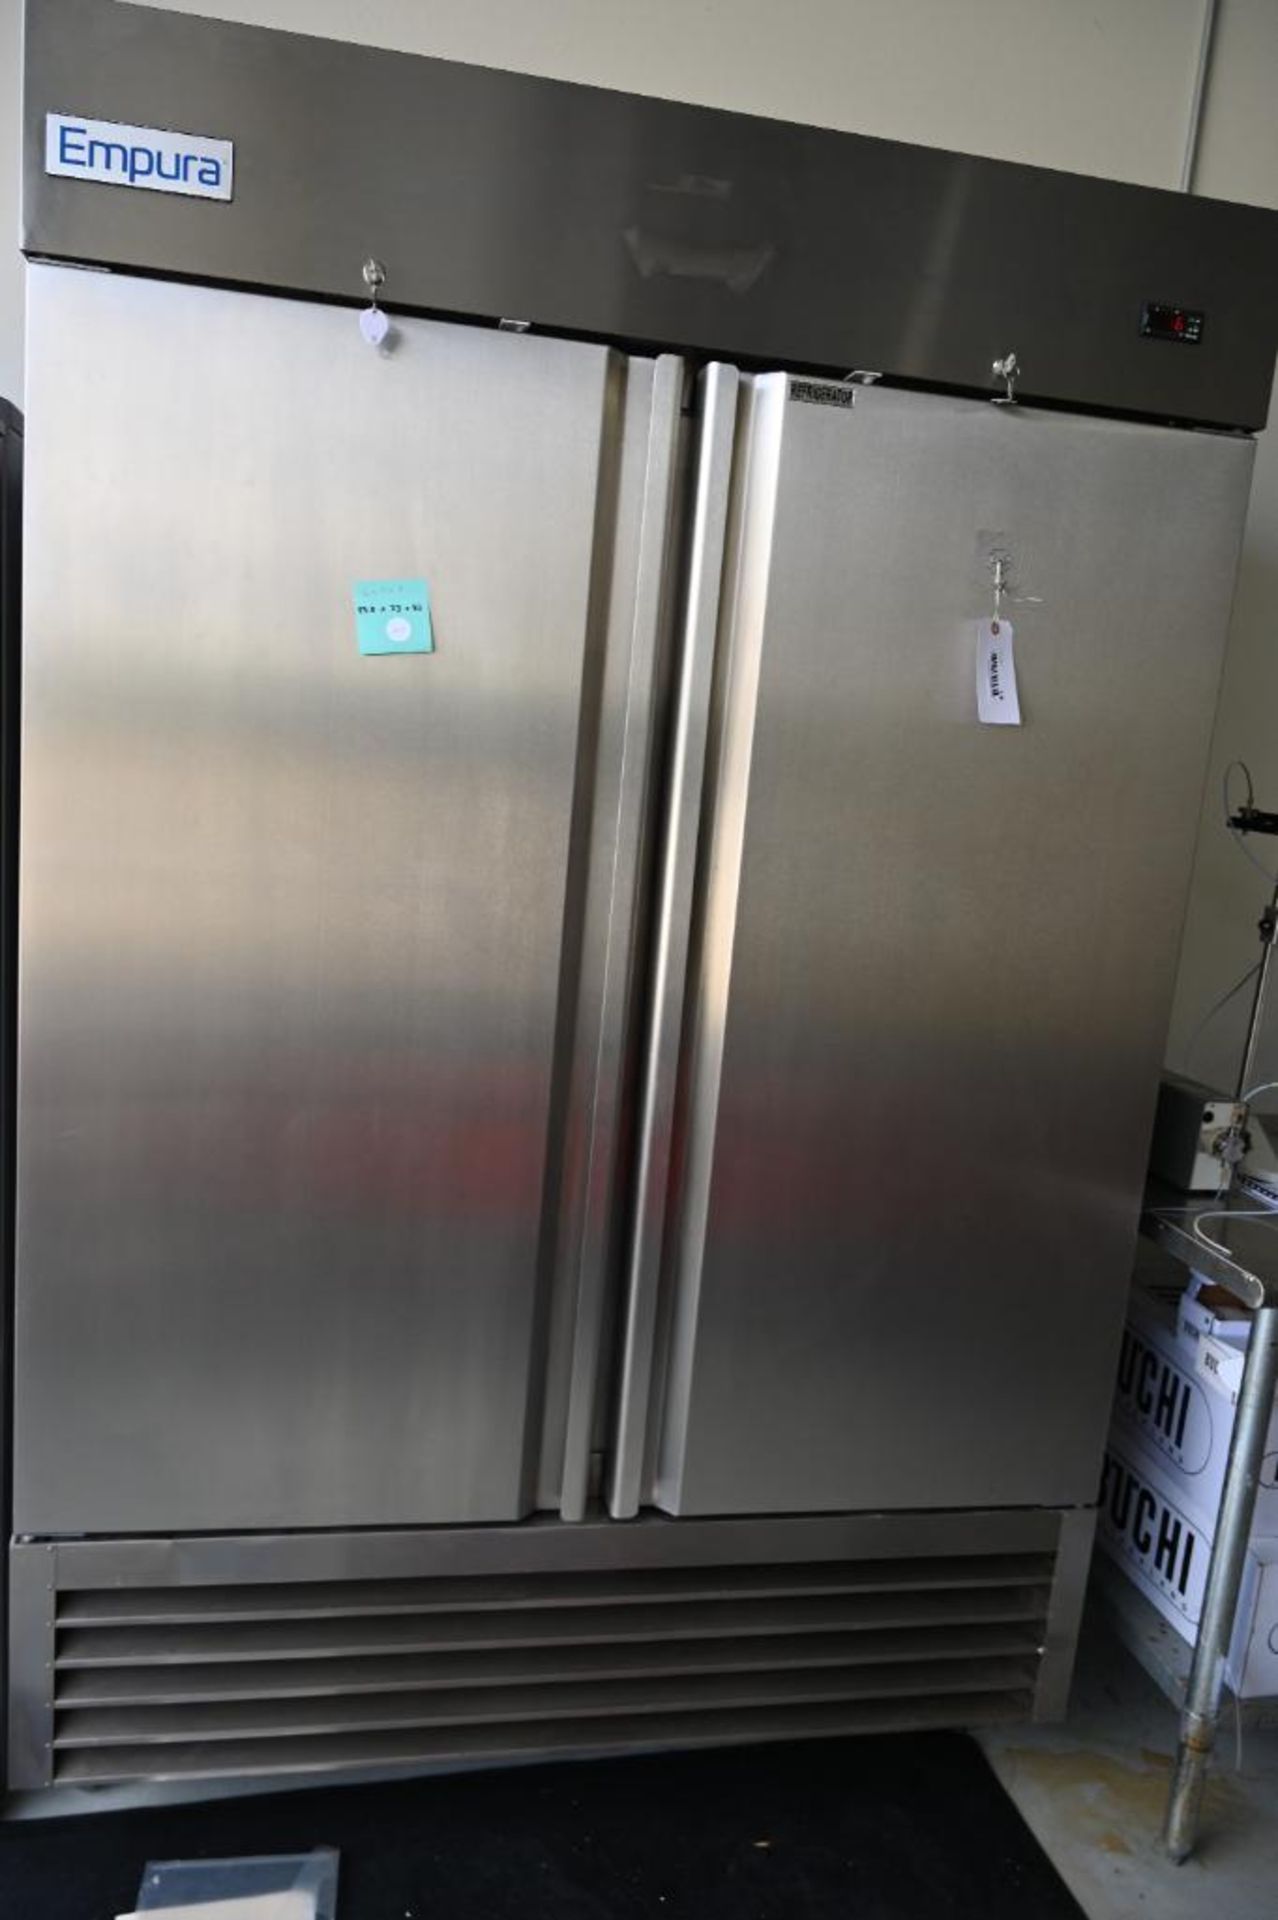 Empura model EKB54R Stainless Commercial Refrigerator - Image 10 of 14